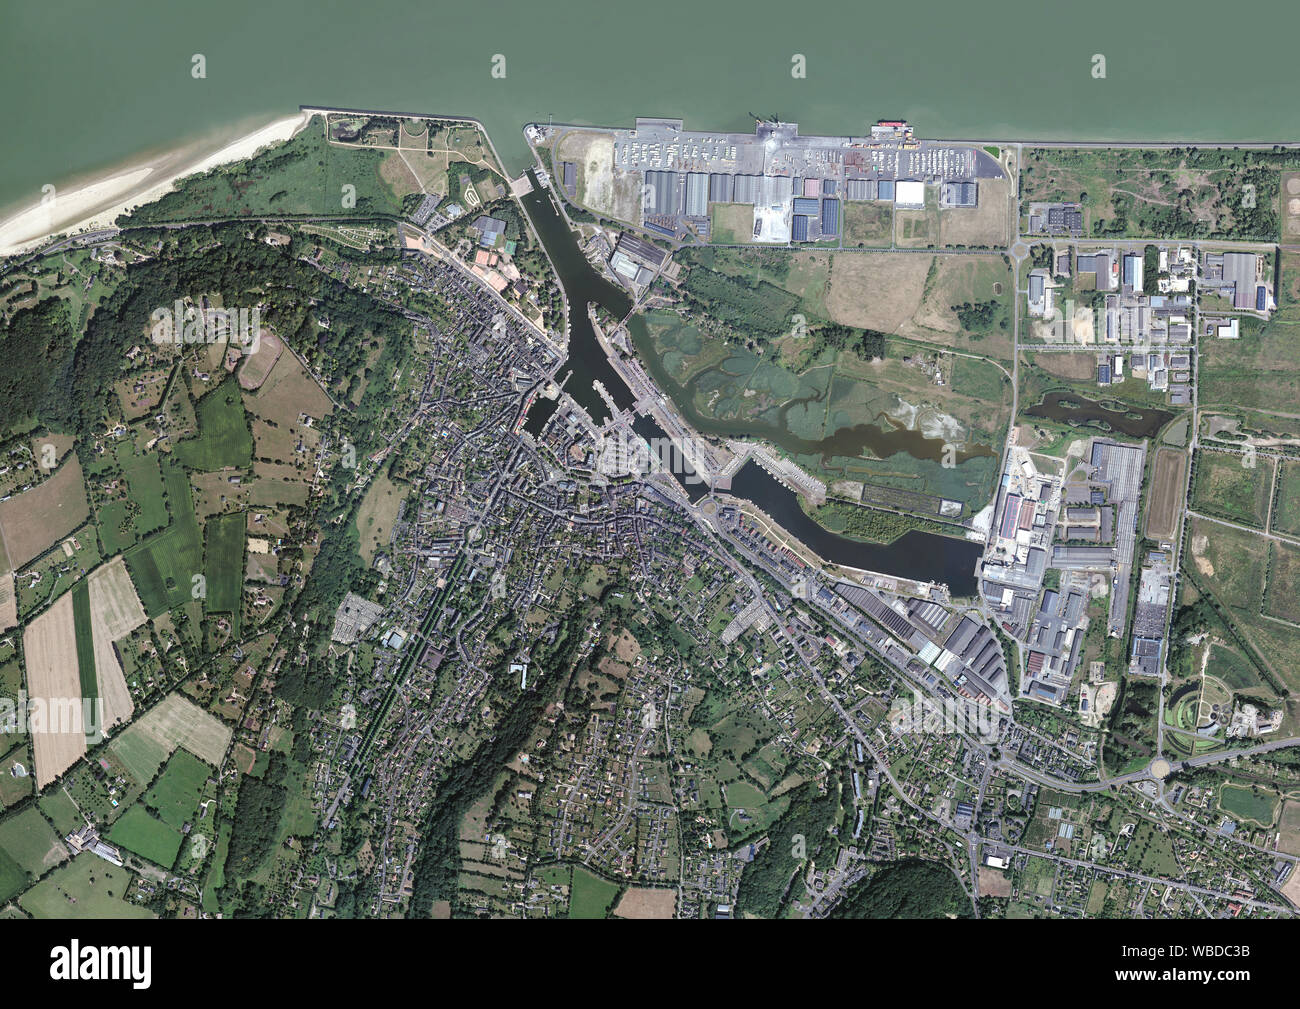 La fotografia aerea di Honfleur in Normandia, Francia. La città si trova sulla sponda meridionale della foce del fiume Senna. Immagine presa nel 2016. Foto Stock